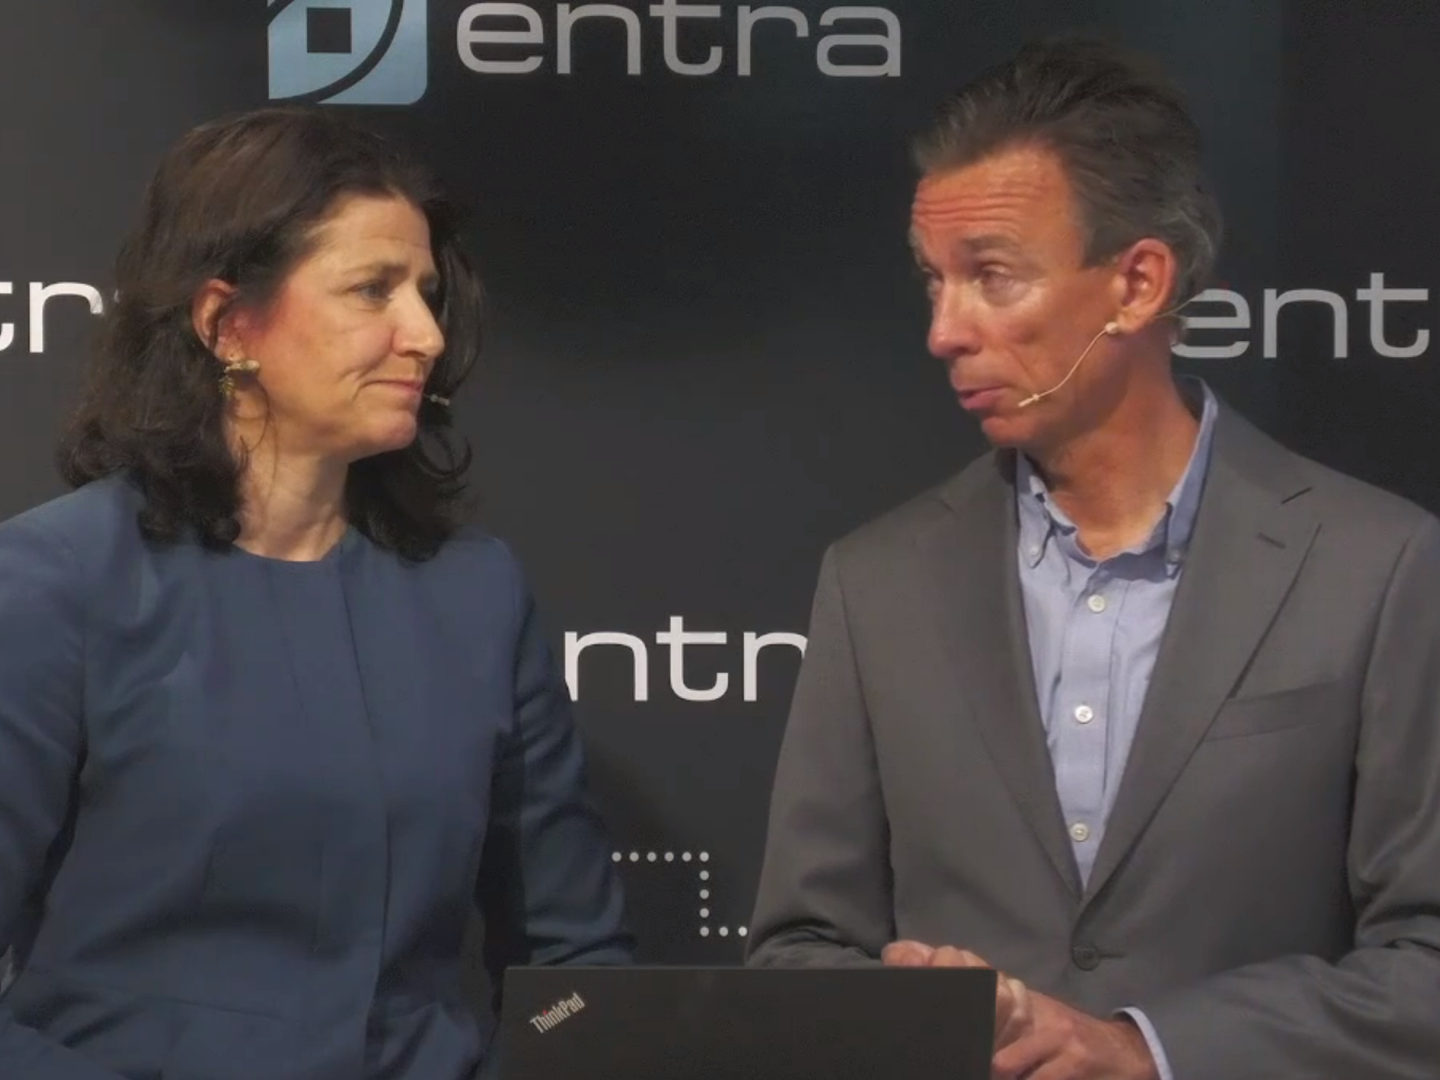 BLIR NEDGRADERT: Administrerende direktør Sonja Horn og Anders Olstad i Entra. | Foto: skjermdump av webcast på Entras hjemmeside